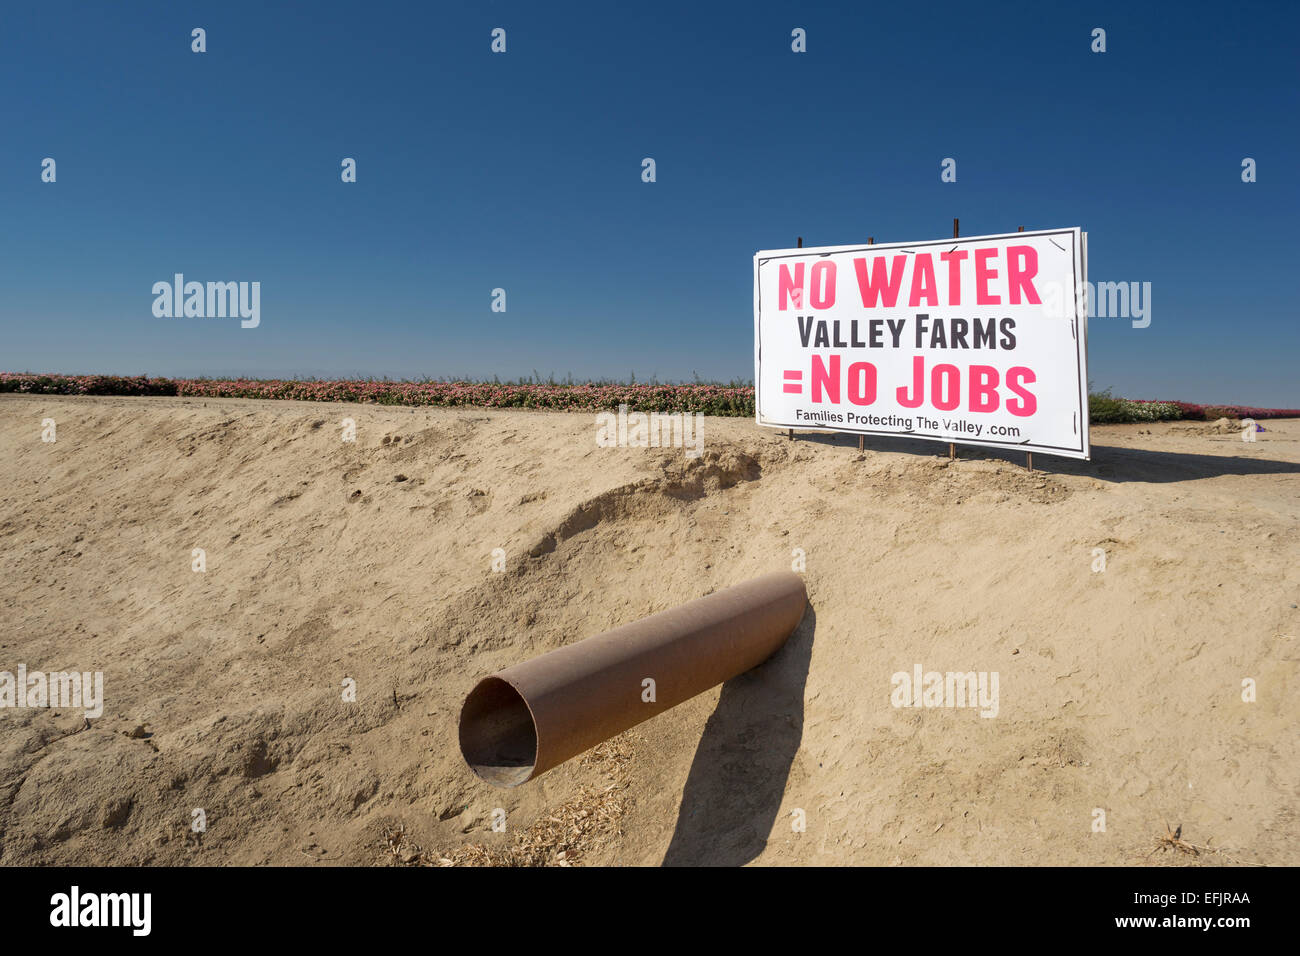 Pas d'eau PAS D'EMPLOIS SIGNER WASCO CENTRAL VALLEY CALIFORNIA USA Banque D'Images